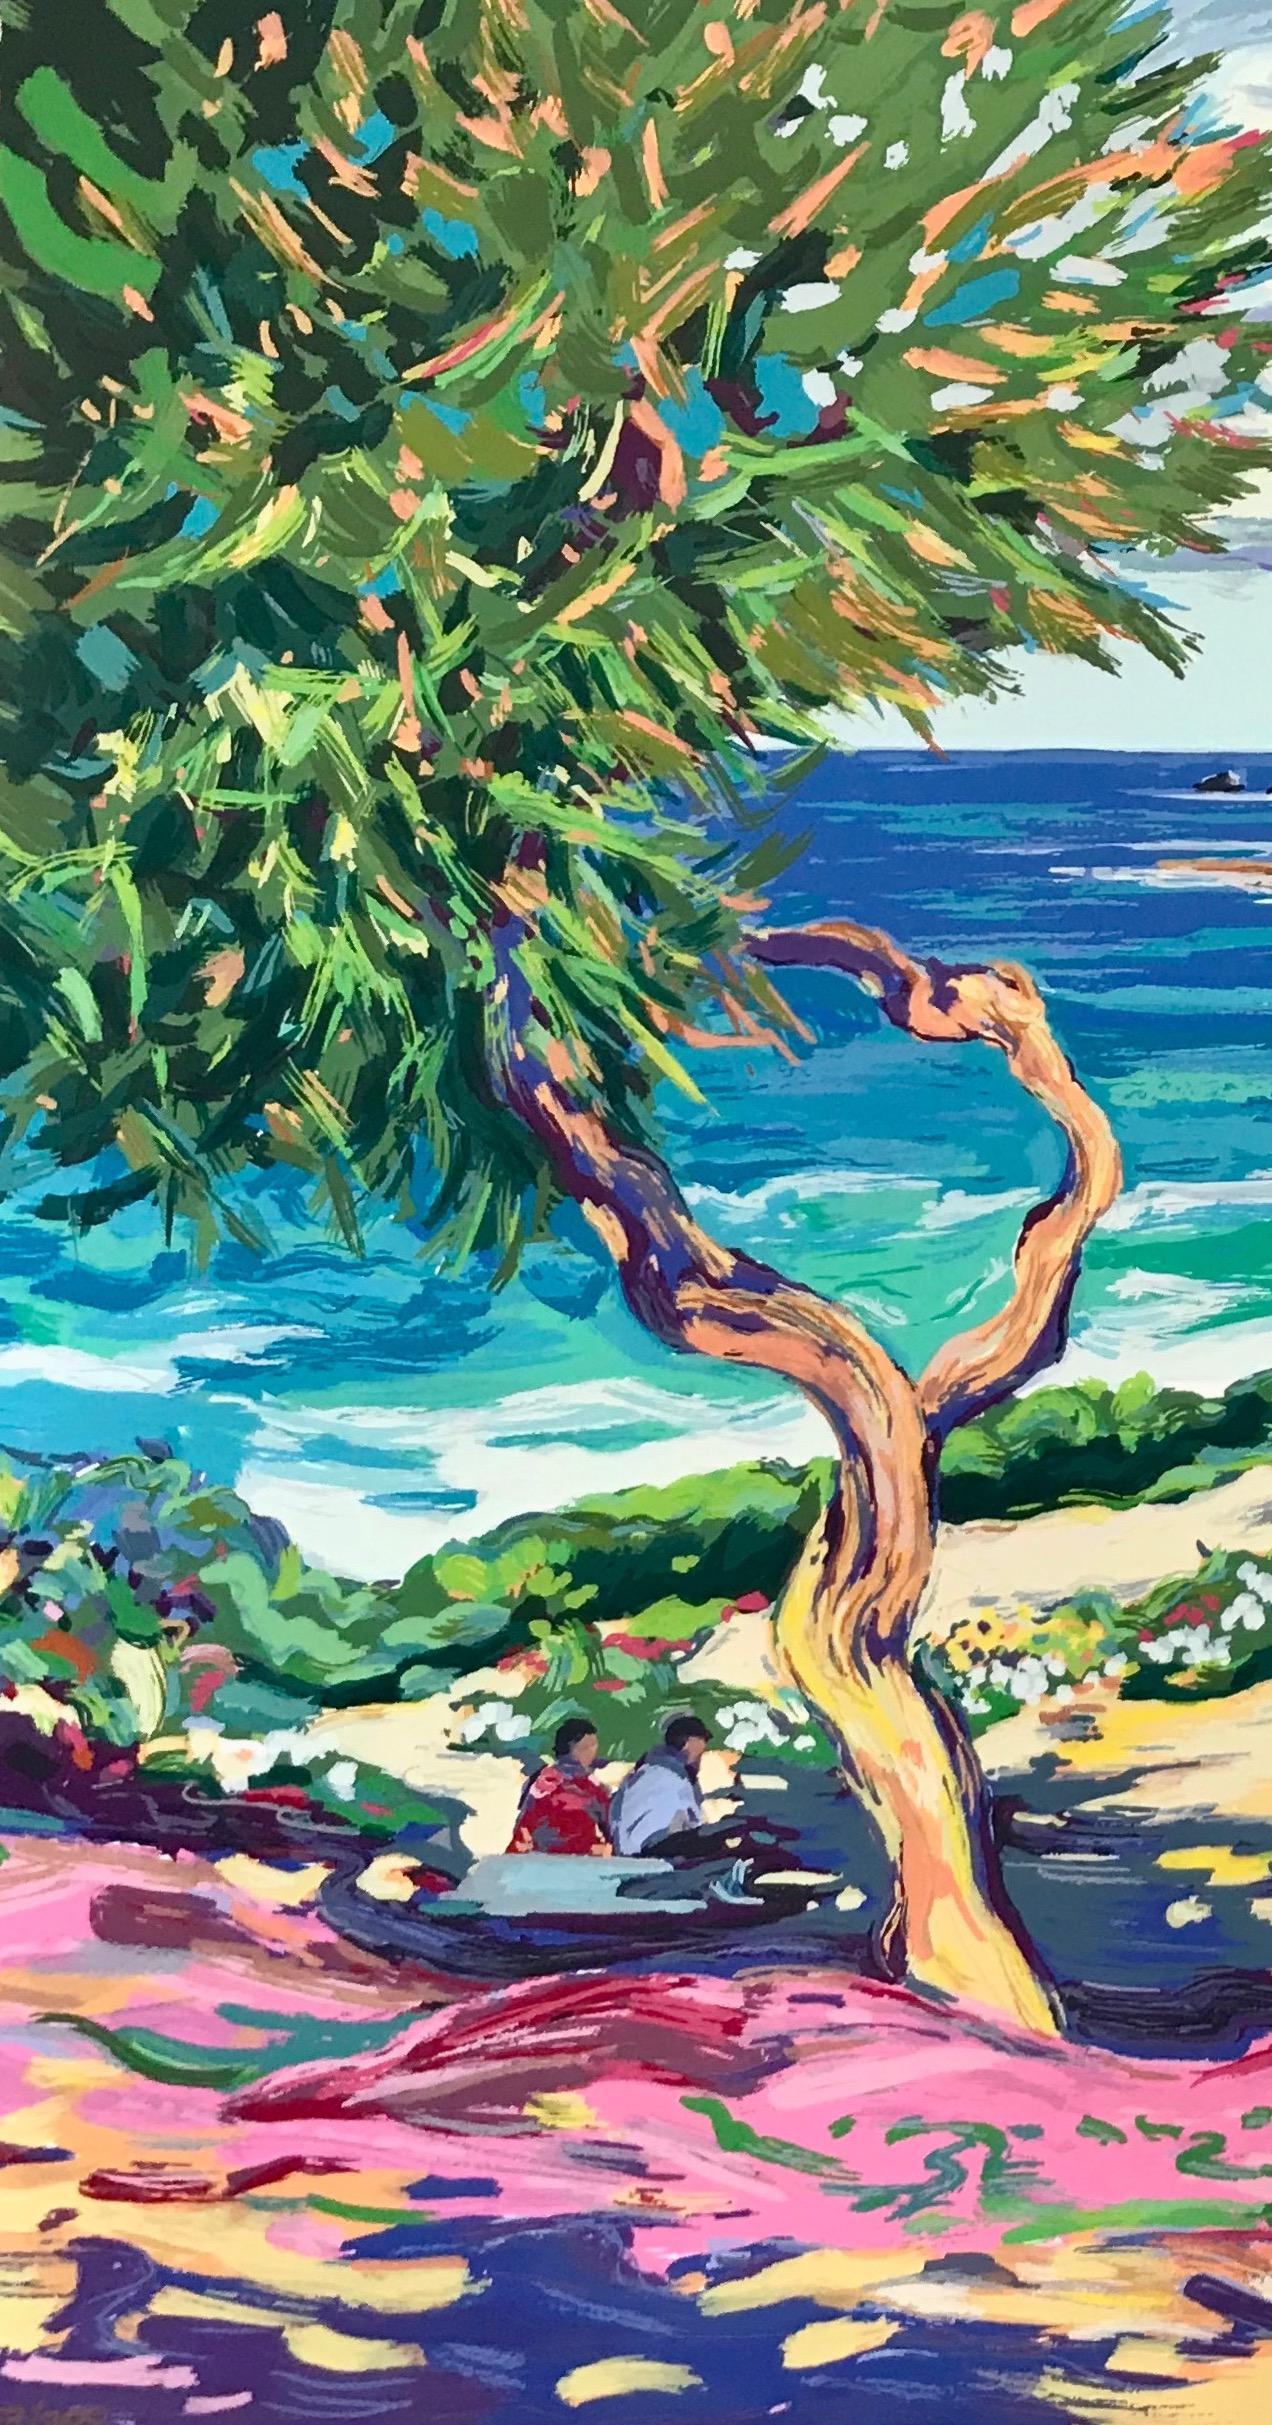 Serigraphie impressionniste contemporaine de Laguna Beach « Laguna Vista » - Print de Maria Bertrán